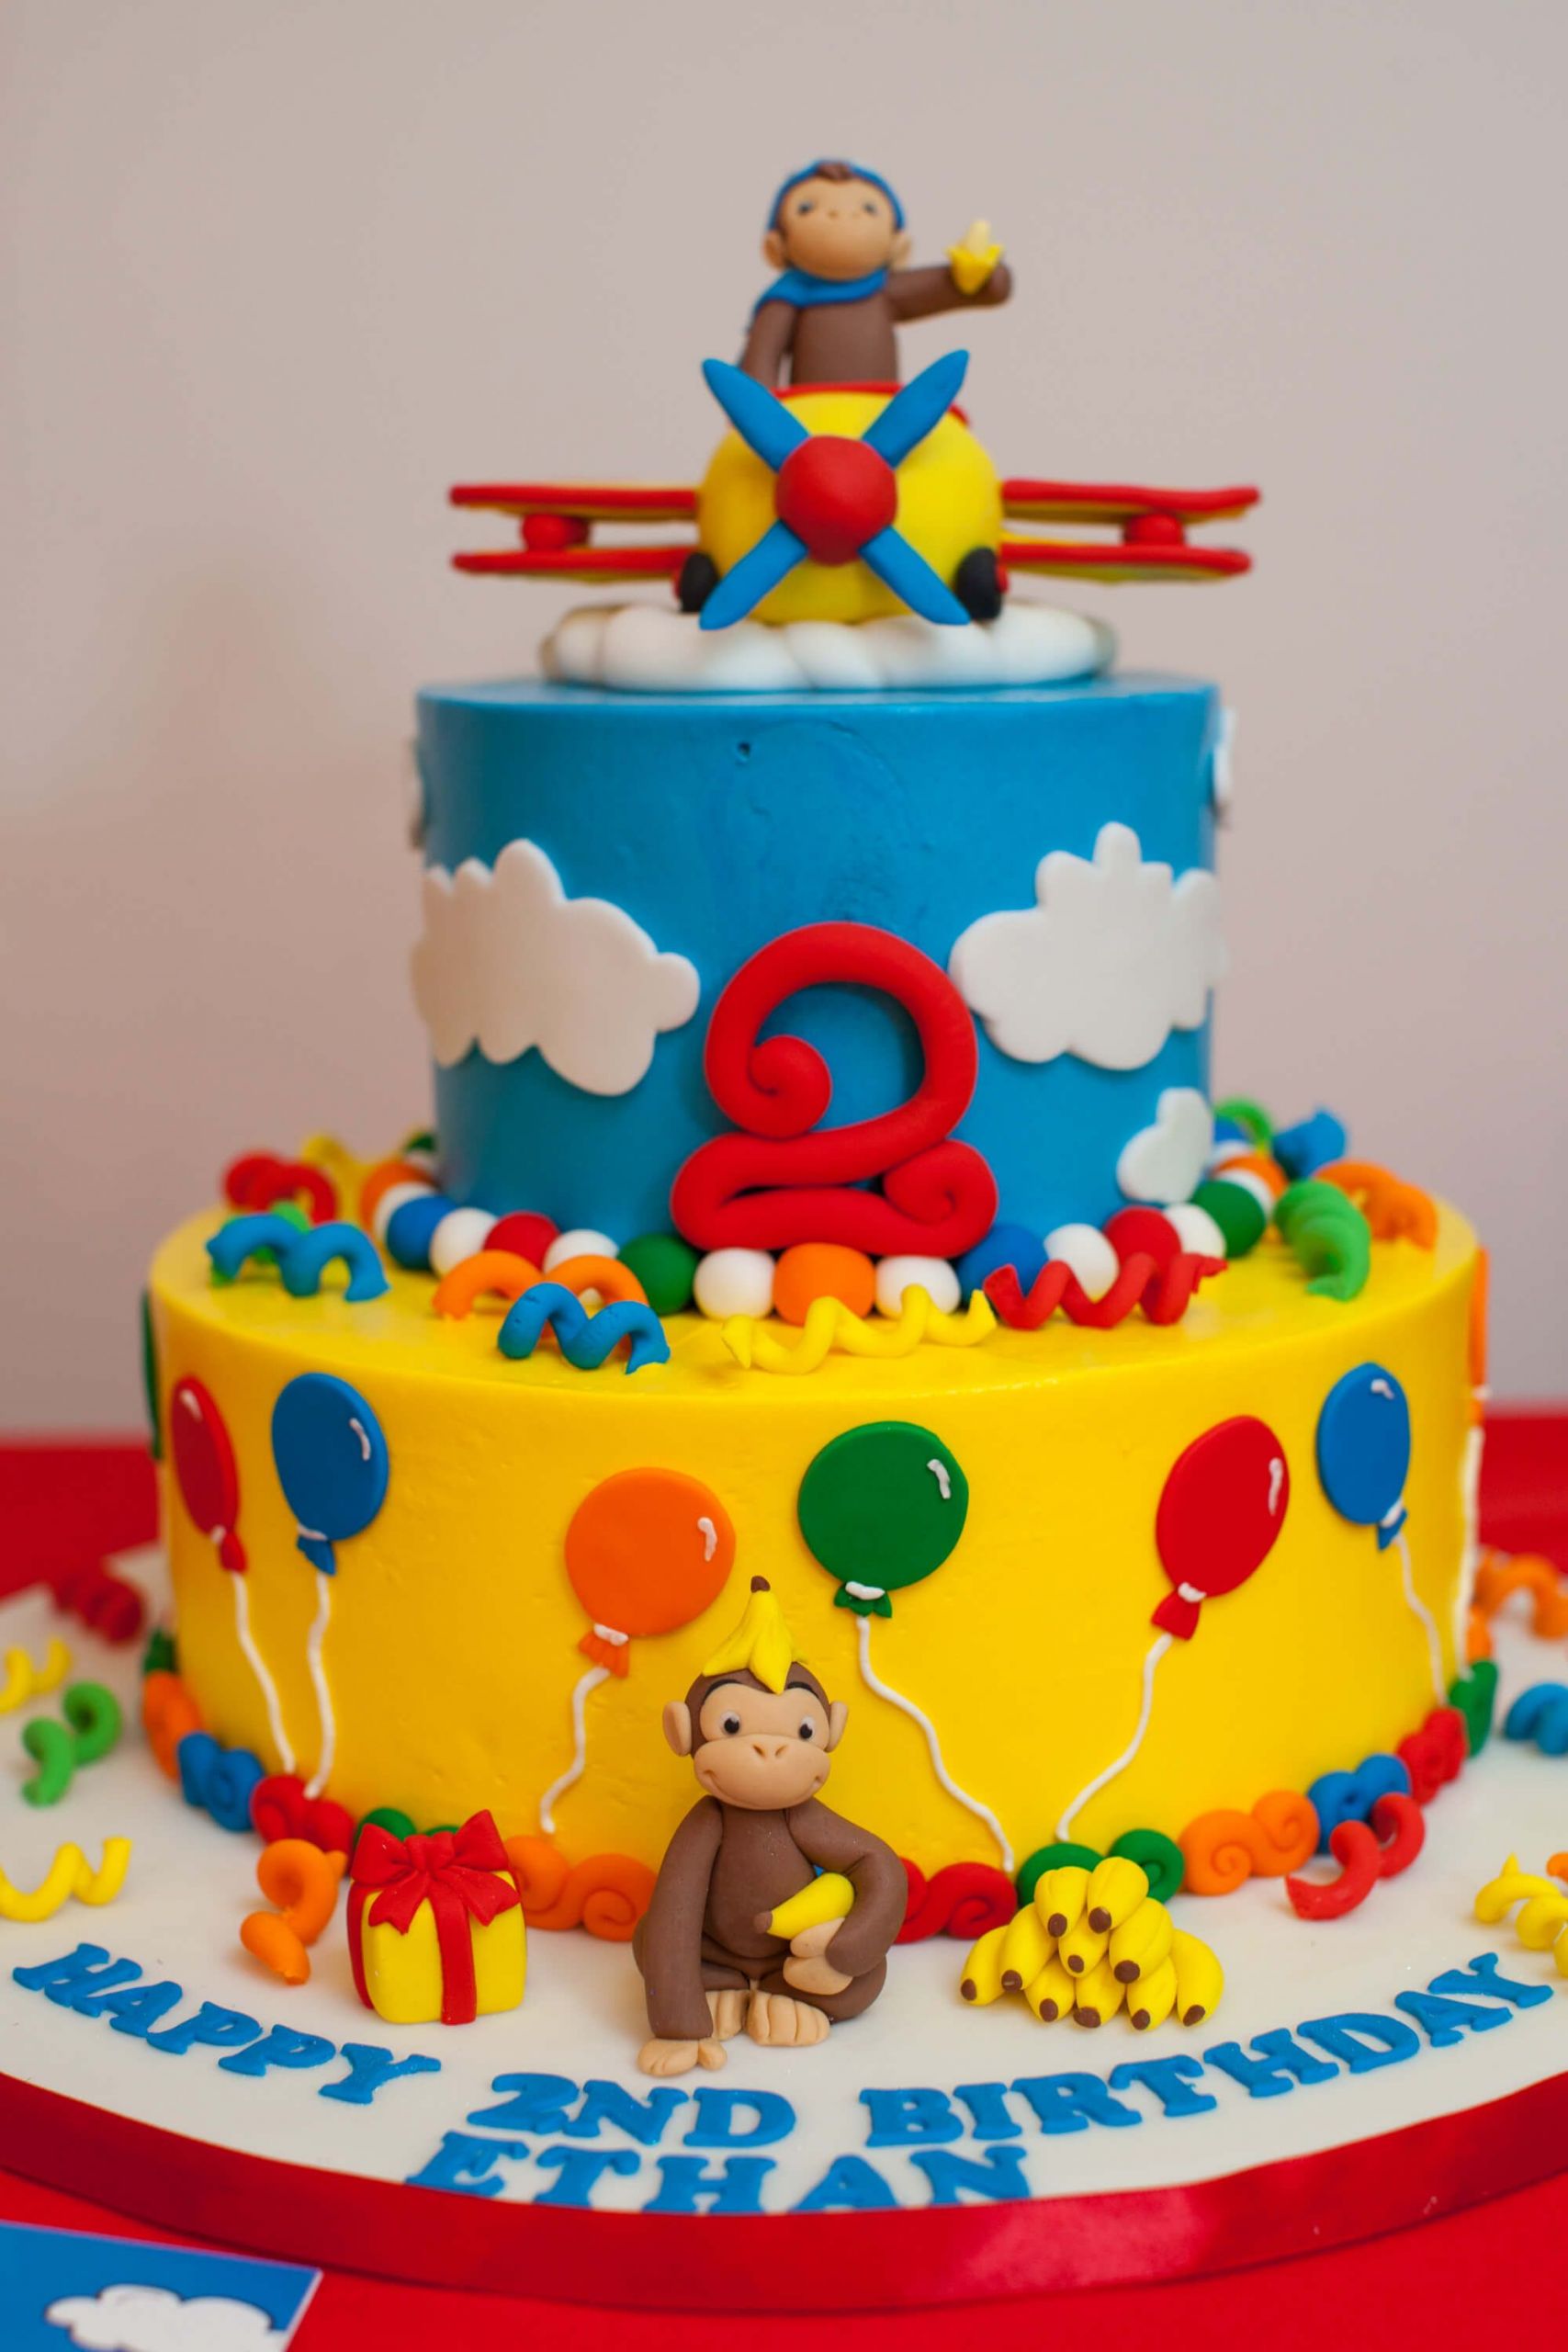 Curious George Birthday Cake
 Curious George birthday cake